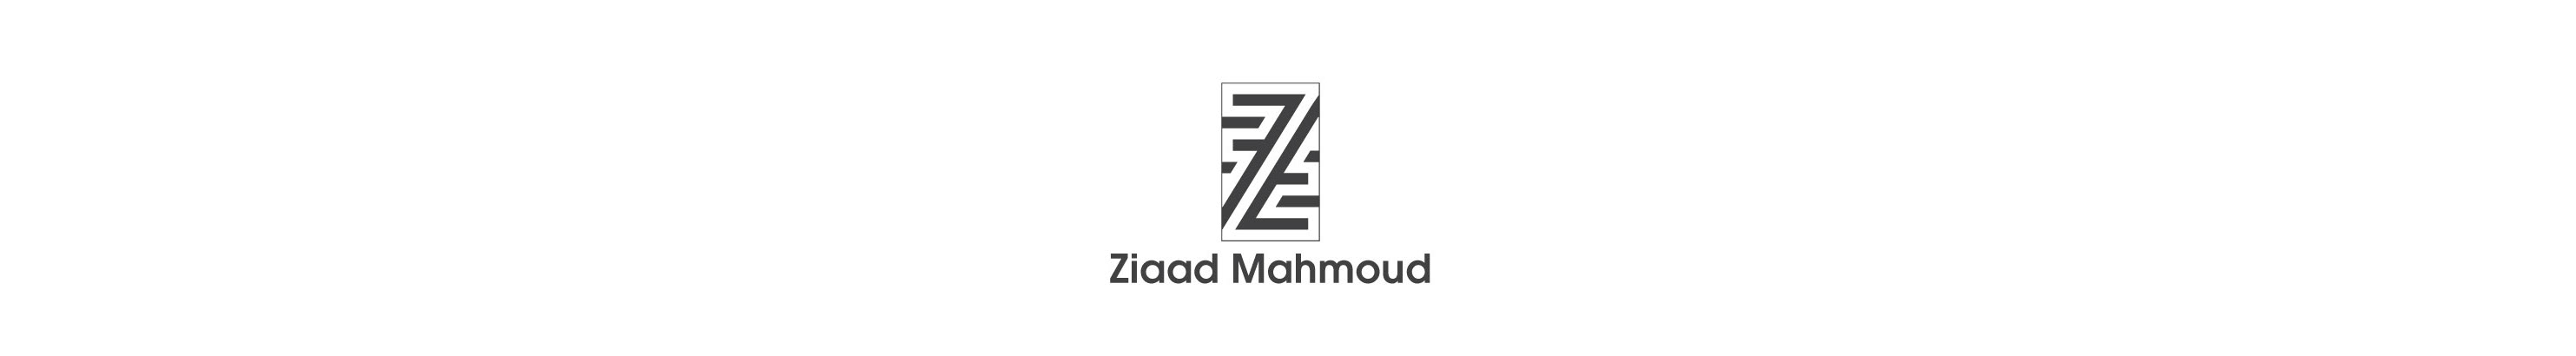 Ziaad Mahmoud 的个人资料横幅